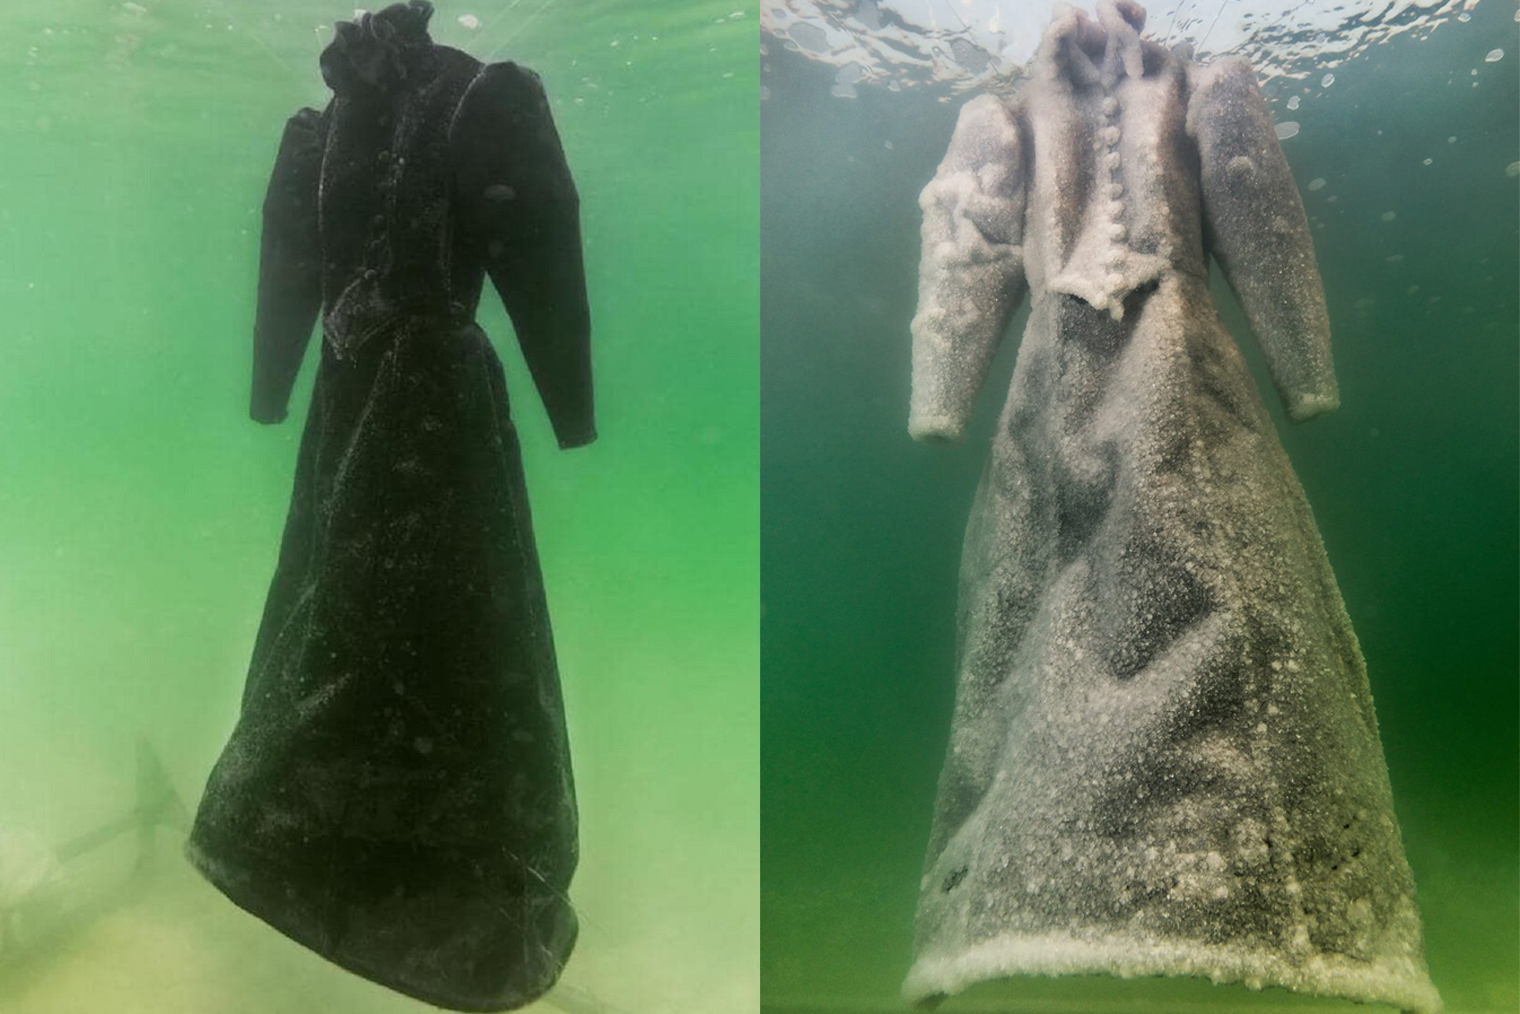 В 2014 году в Мертвое море погрузили длинное черное платье. Через два месяца оно превратилось в сверкающую кристаллическую скульптуру из соли. Источник: Sigalit Landau & Marlborough Contemporary